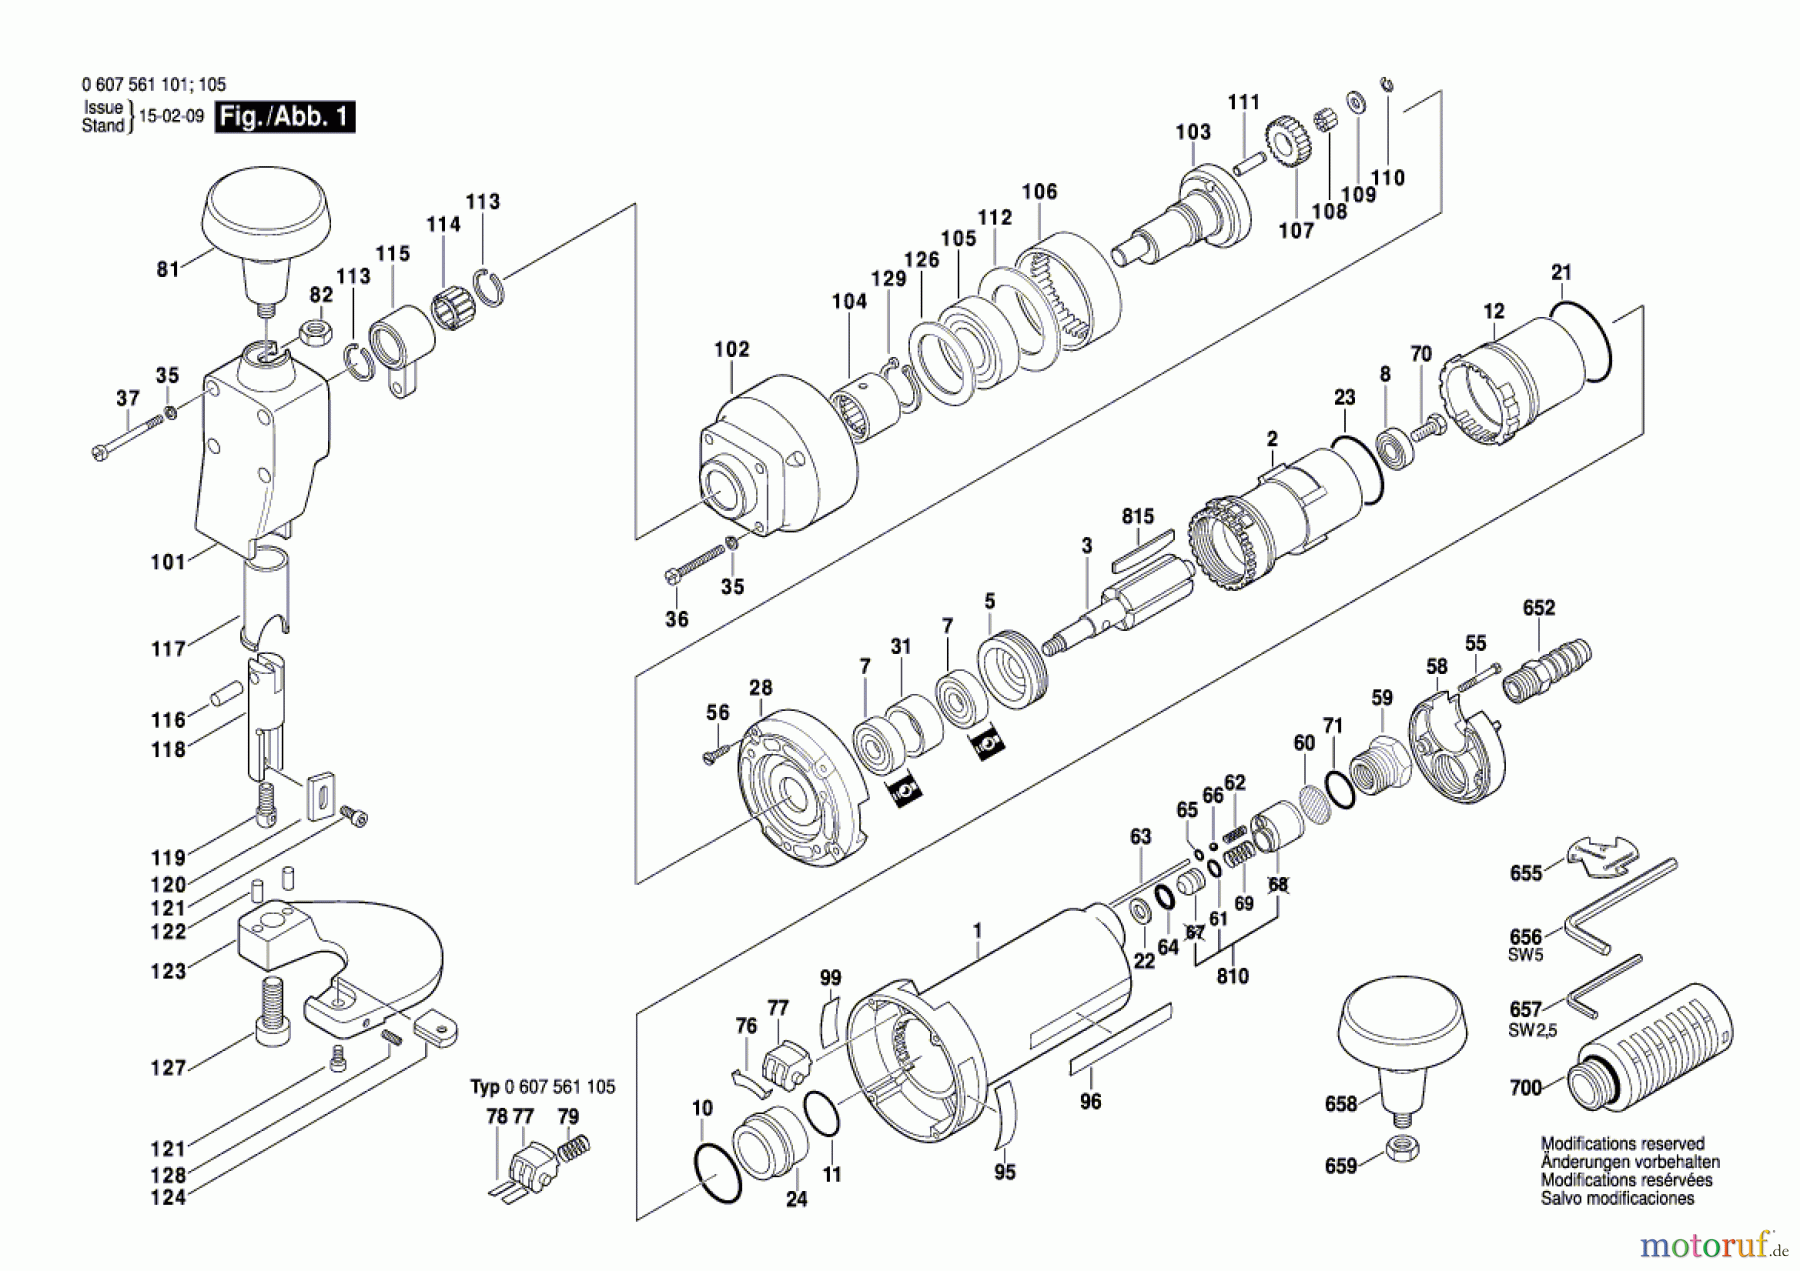  Bosch Werkzeug Pw-Blechschere 400 WATT-SERIE Seite 1